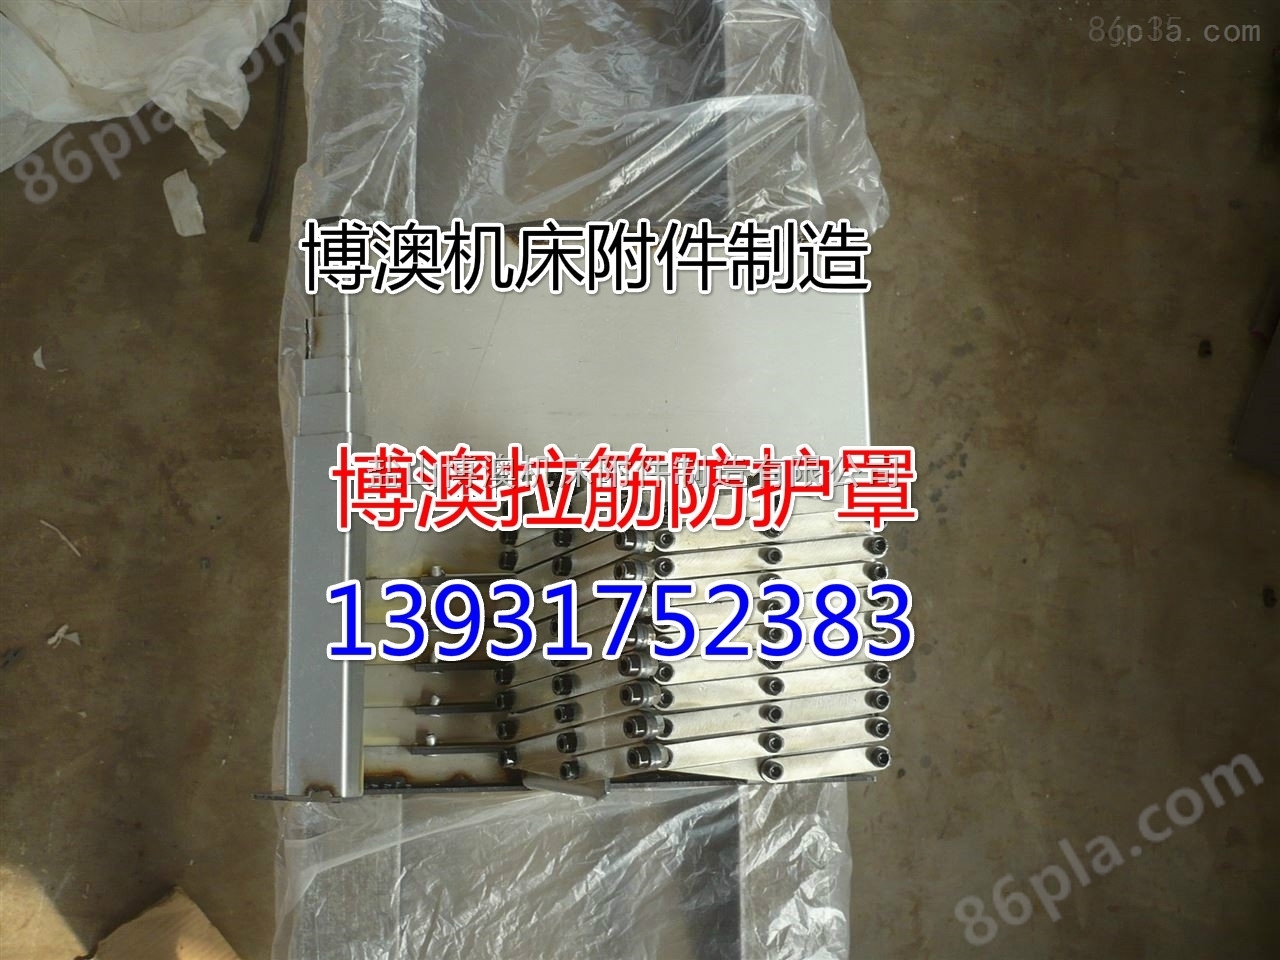 中国台湾永进FX380A机床防护罩